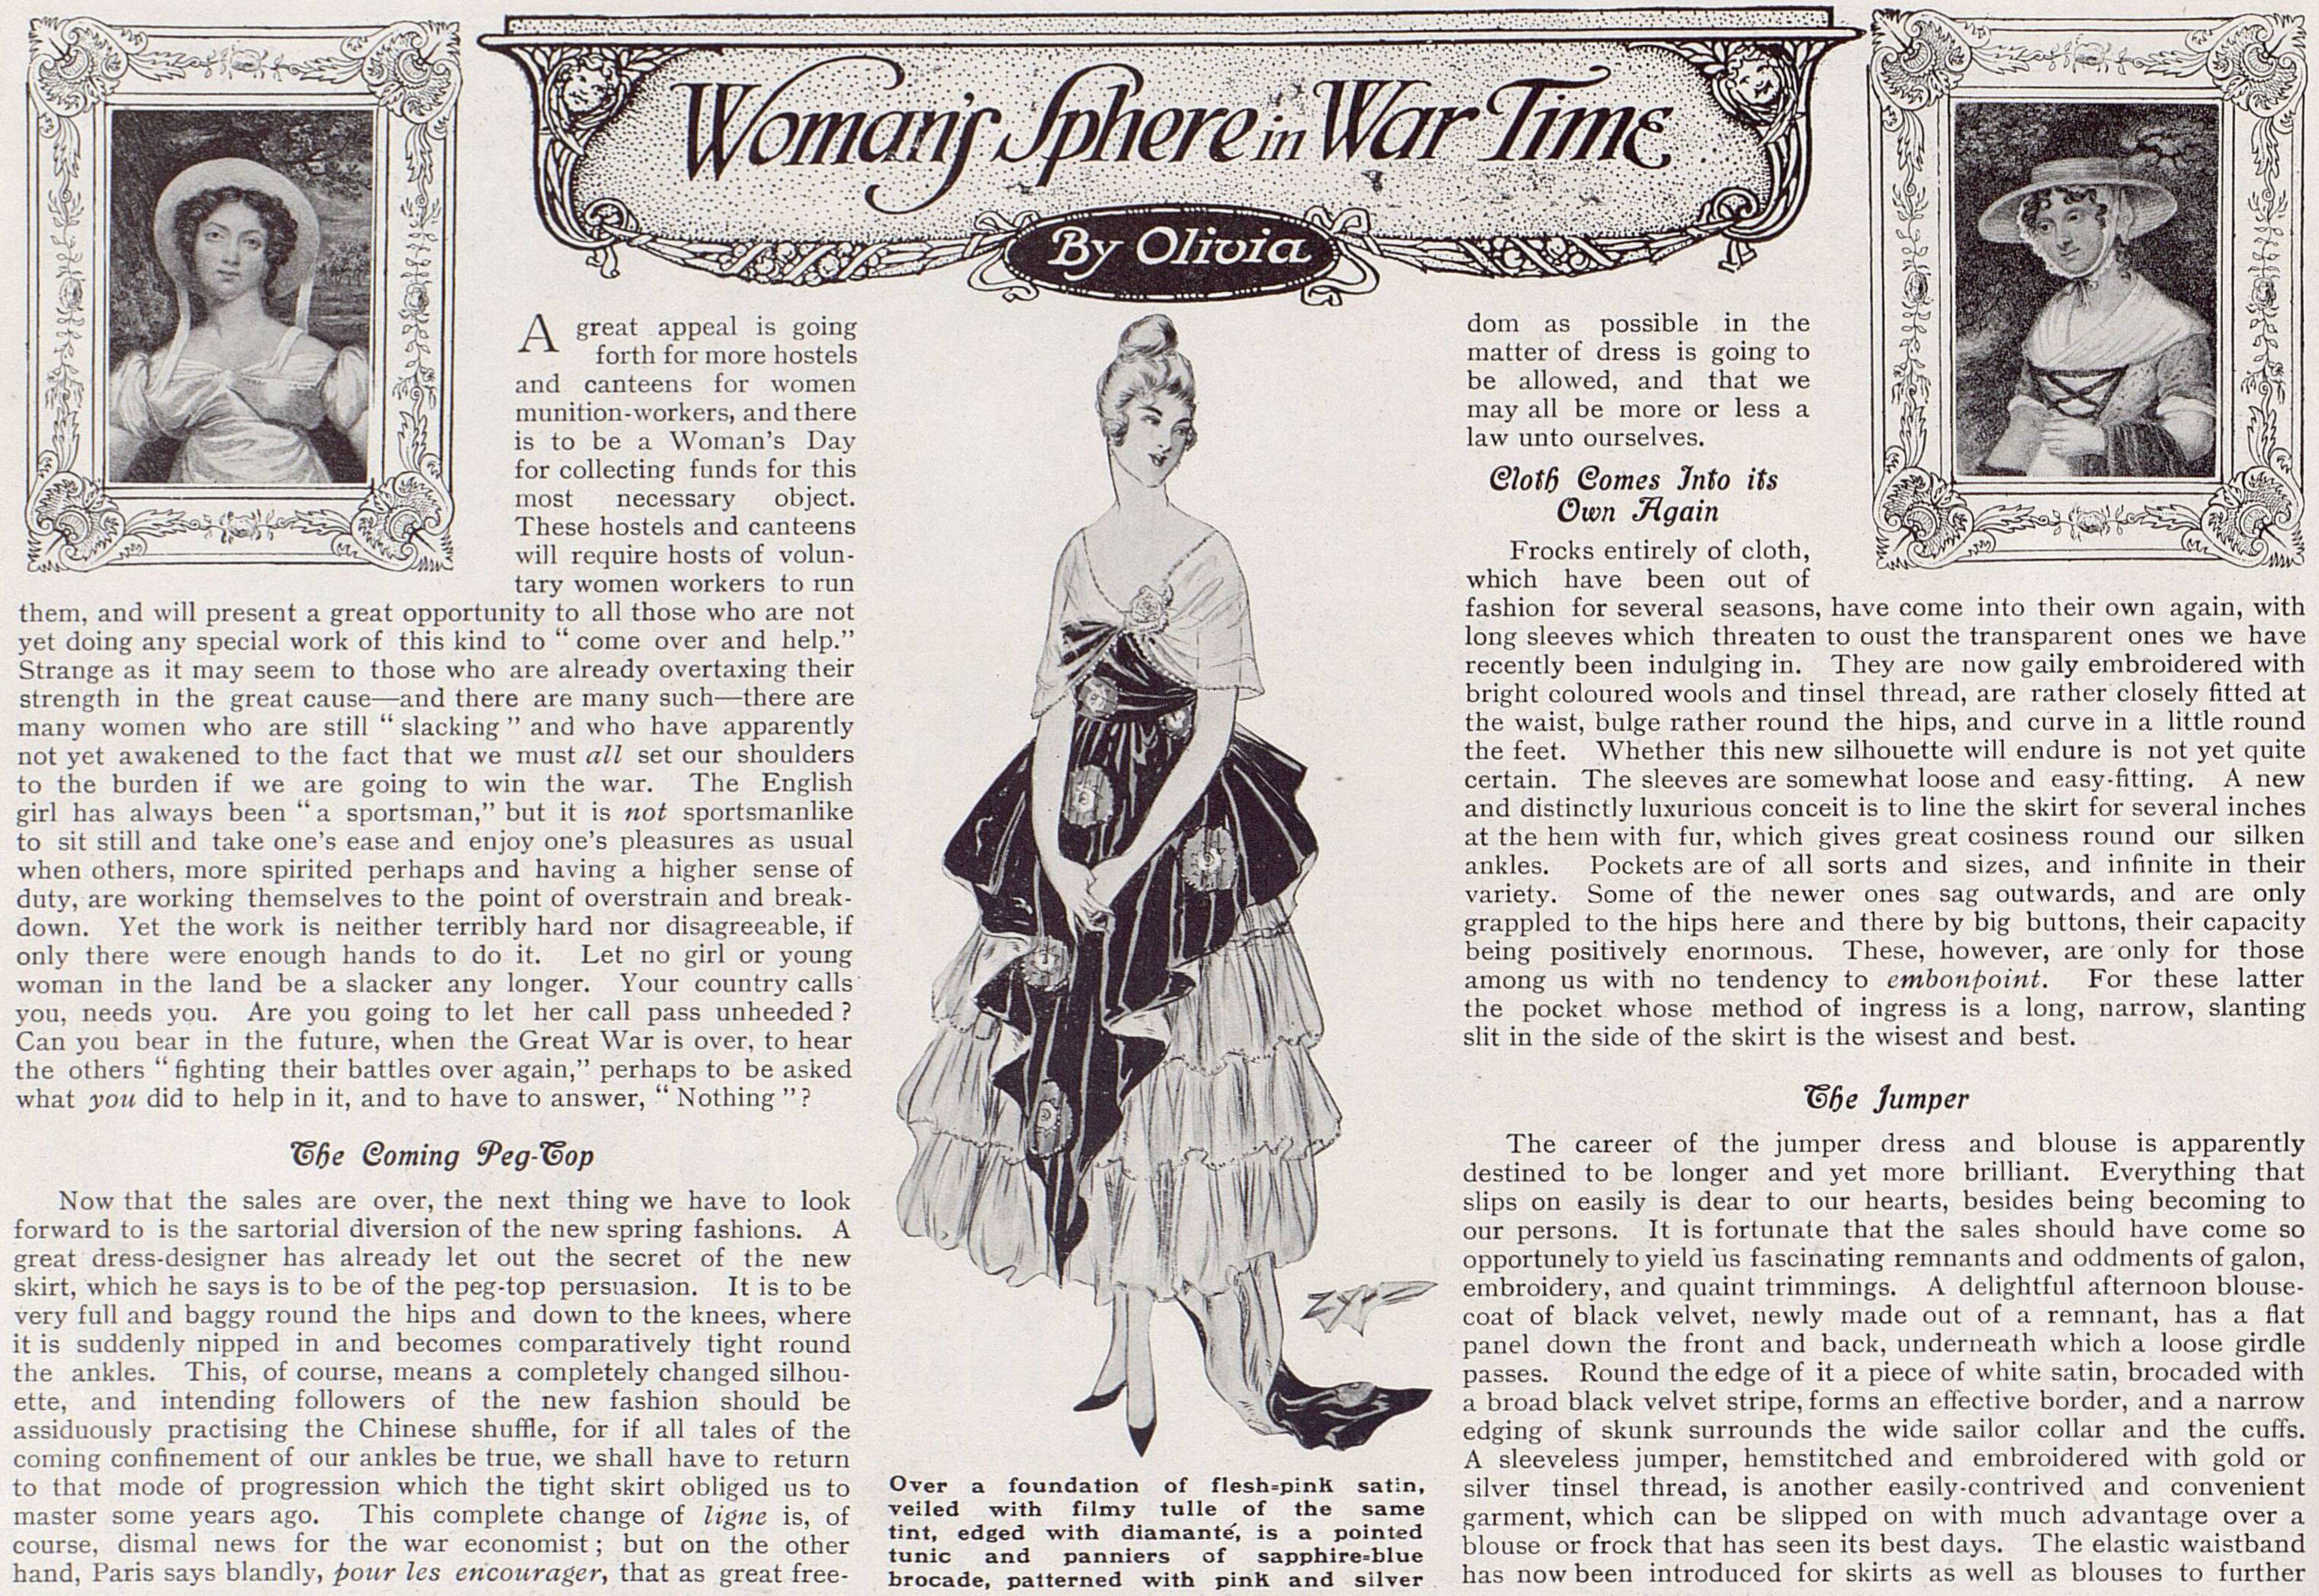 WomansSphereInWarTime_27Jan1917